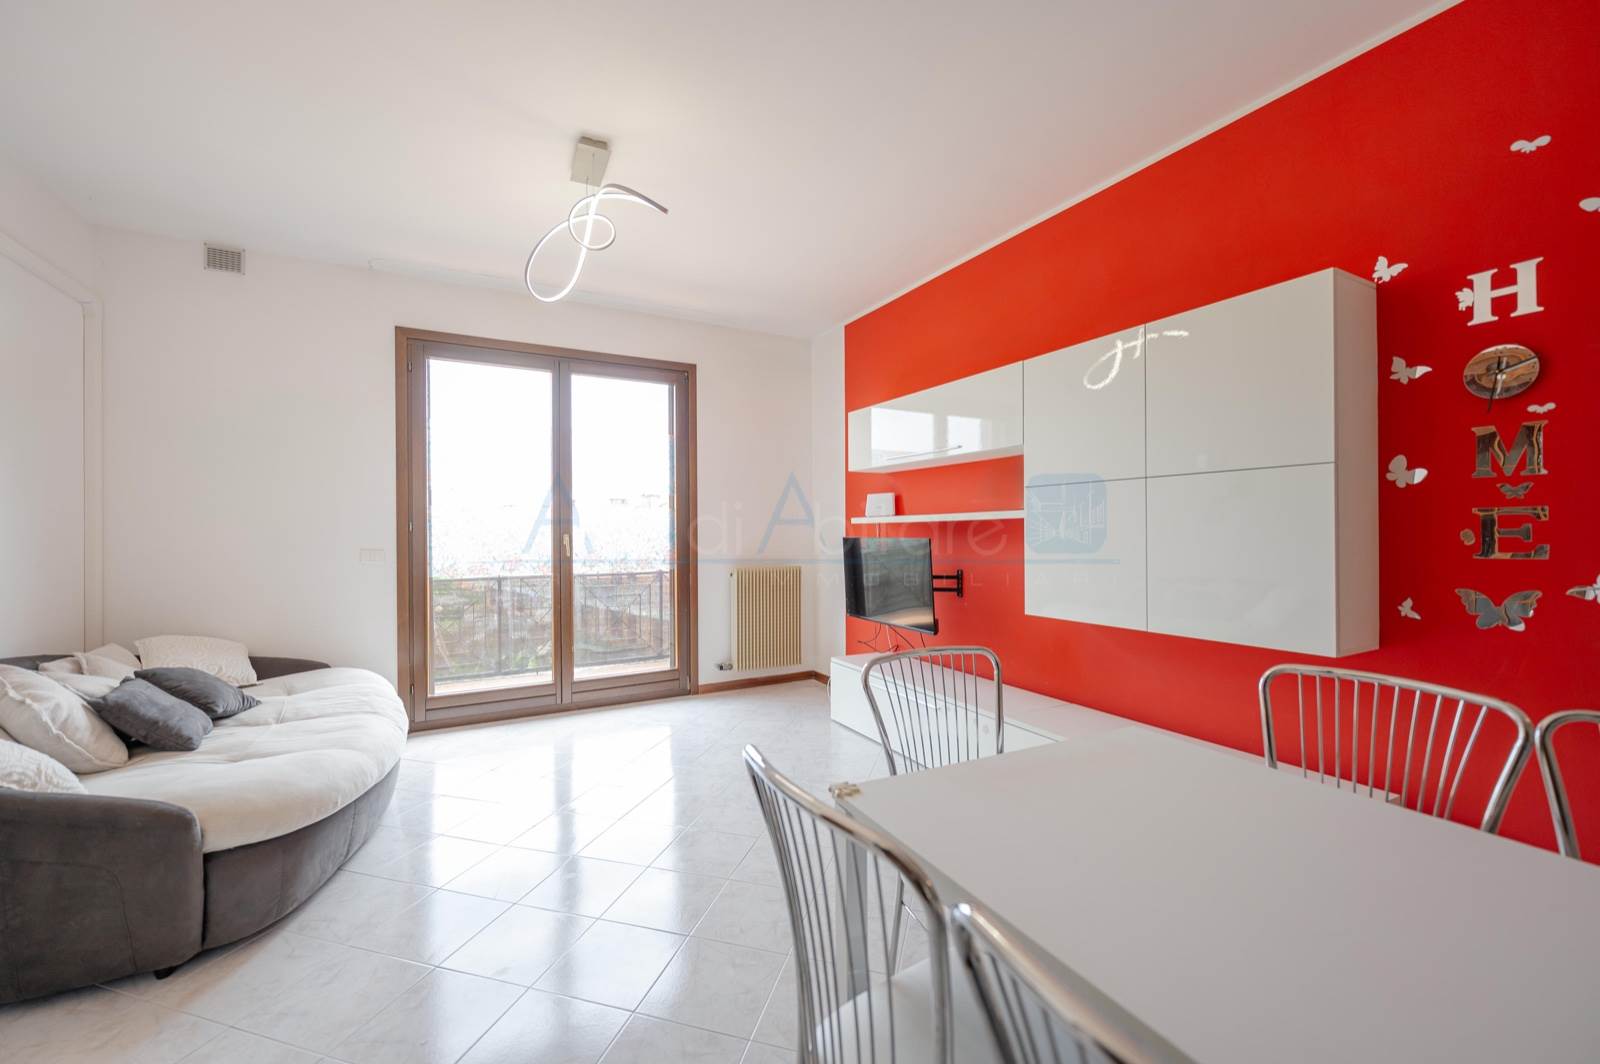 Appartamento in vendita a Meolo, 4 locali, prezzo € 113.000 | PortaleAgenzieImmobiliari.it